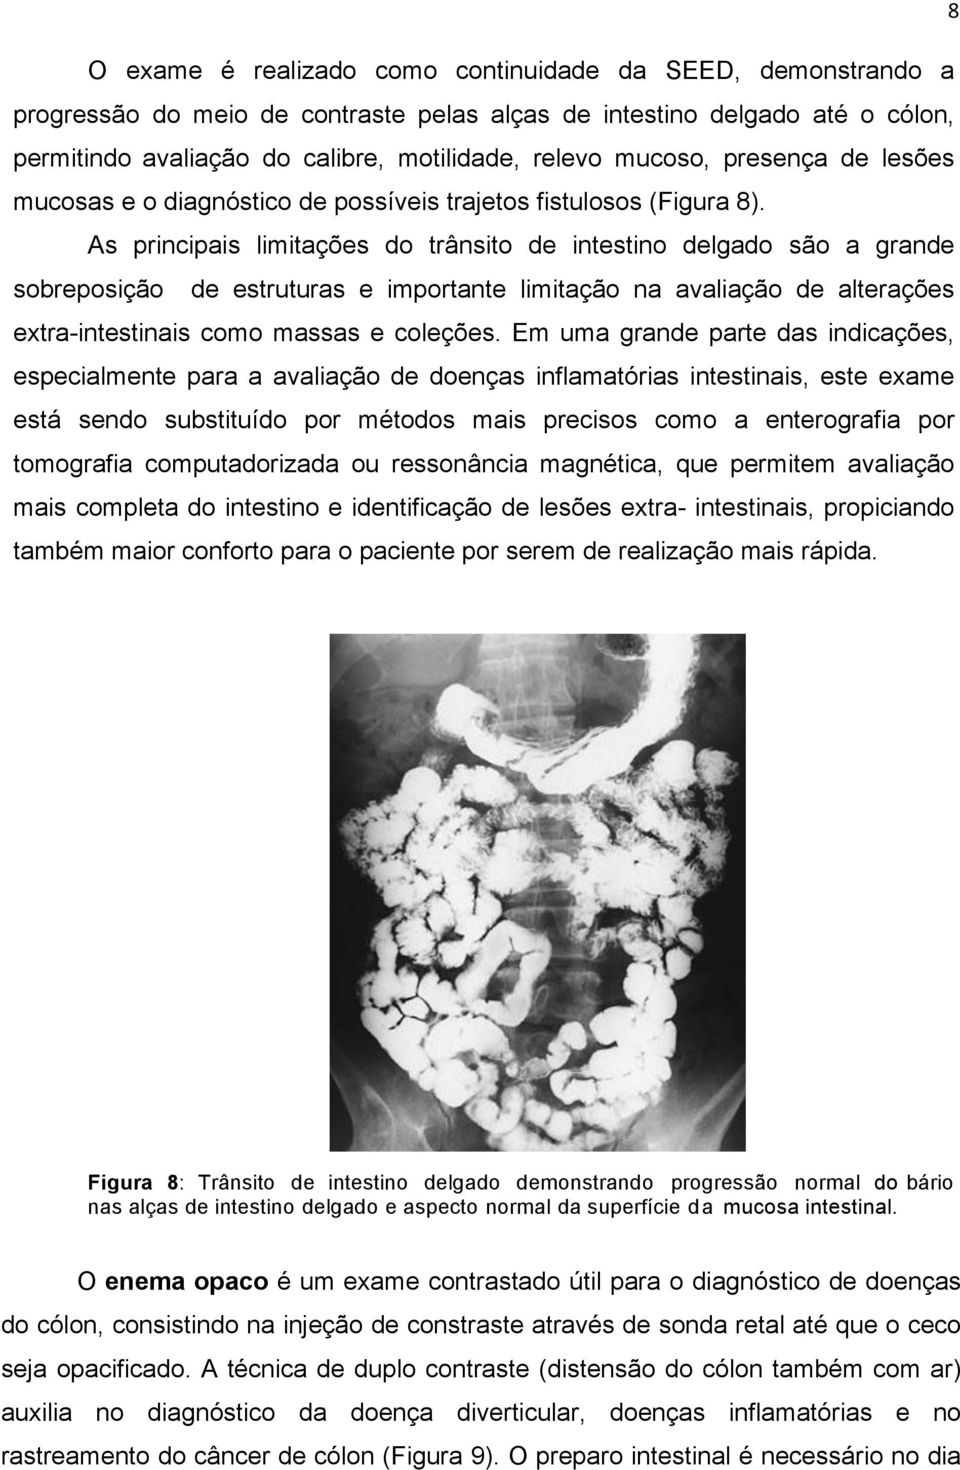 As principais limitações do trânsito de intestino delgado são a grande sobreposição de estruturas e importante limitação na avaliação de alterações extra-intestinais como massas e coleções.